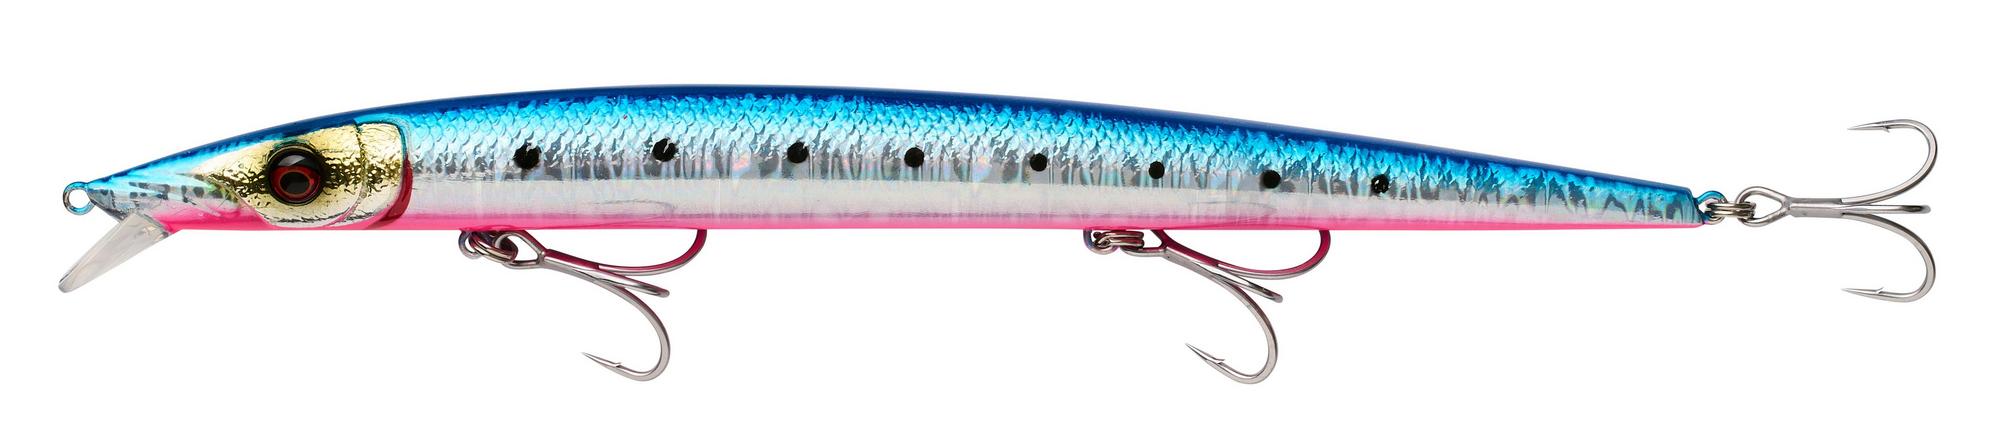 Savage Gear Barra Jerk Sinkender Meeresköder 21cm (38g) - Pinkbelly Sardine